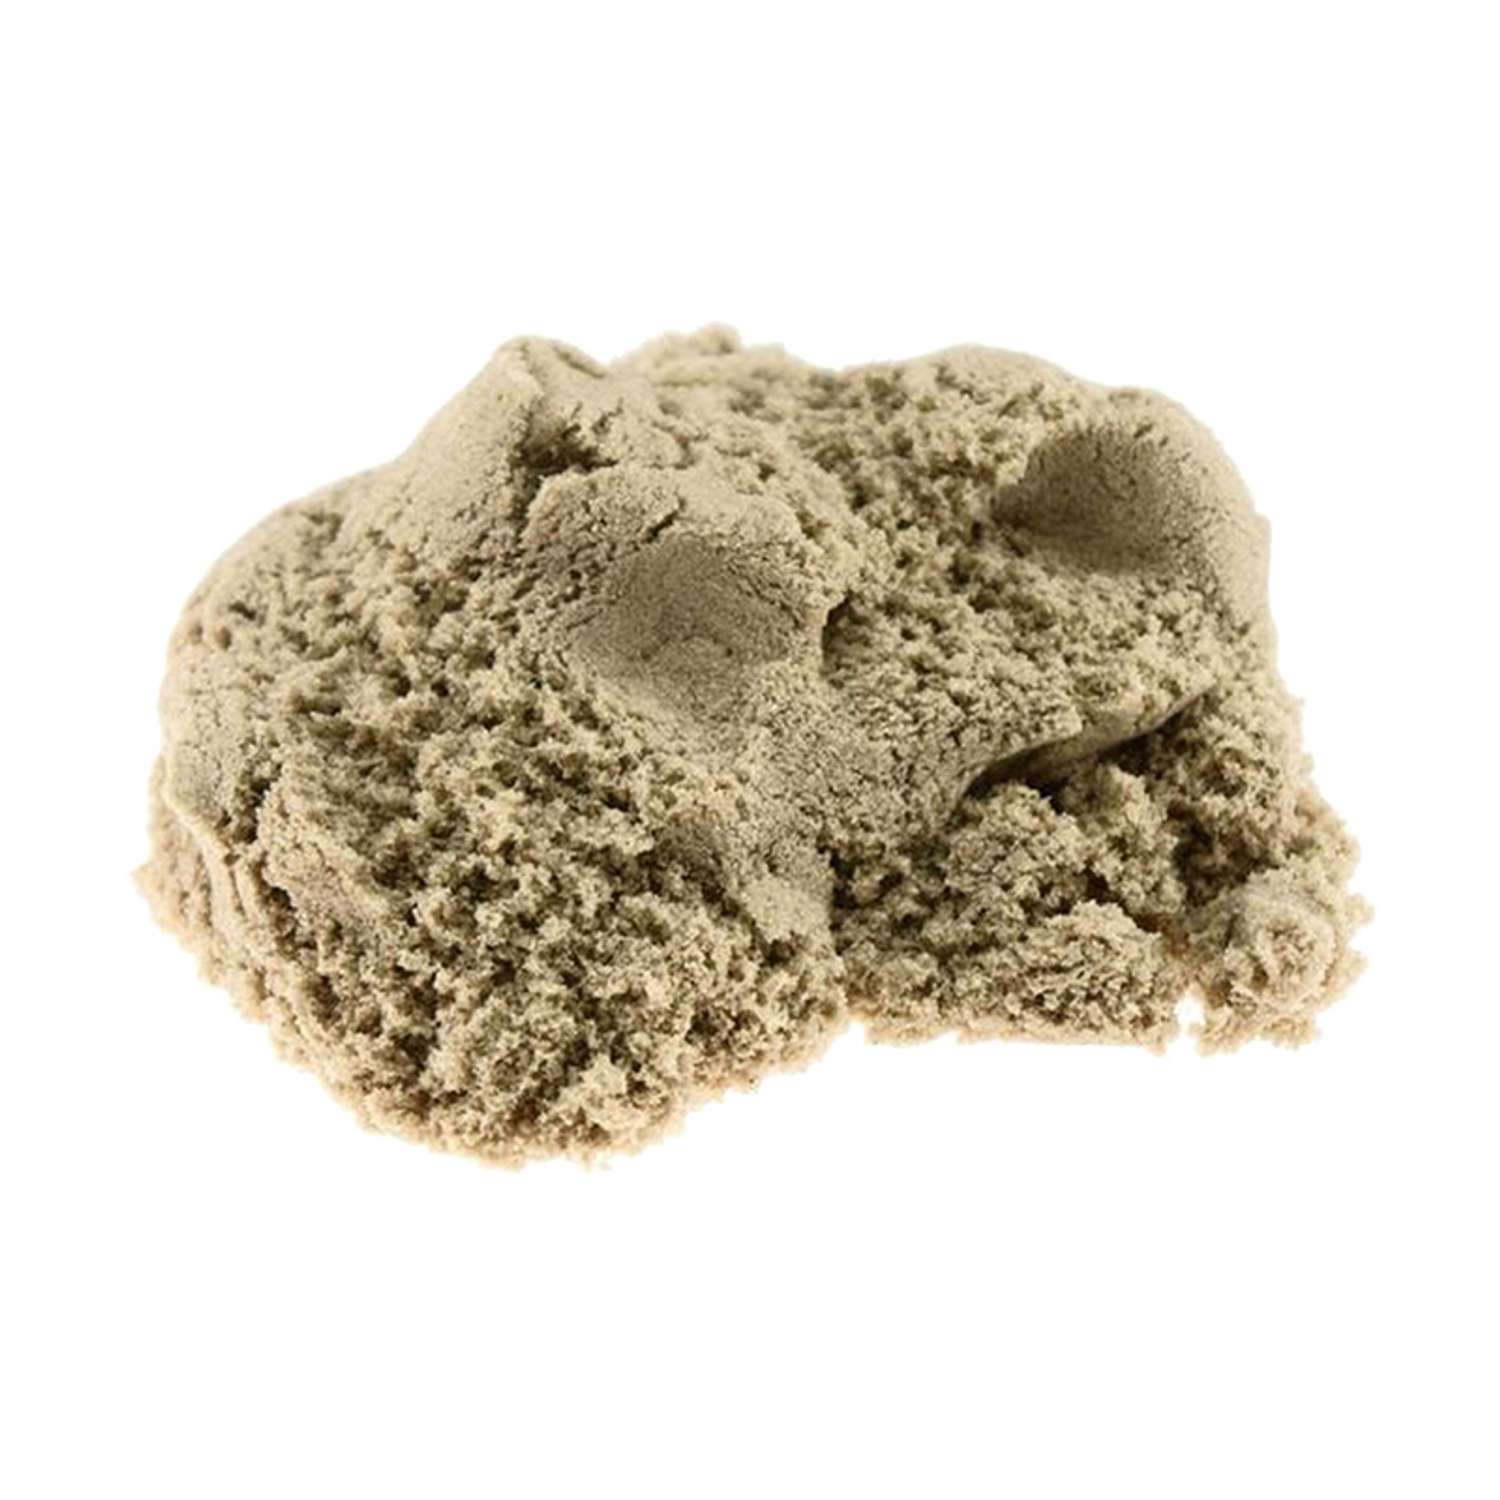 Домашняя песочница LORI(колорит) Морской песок 1.5 кг(формочки, совочек) - фото 2